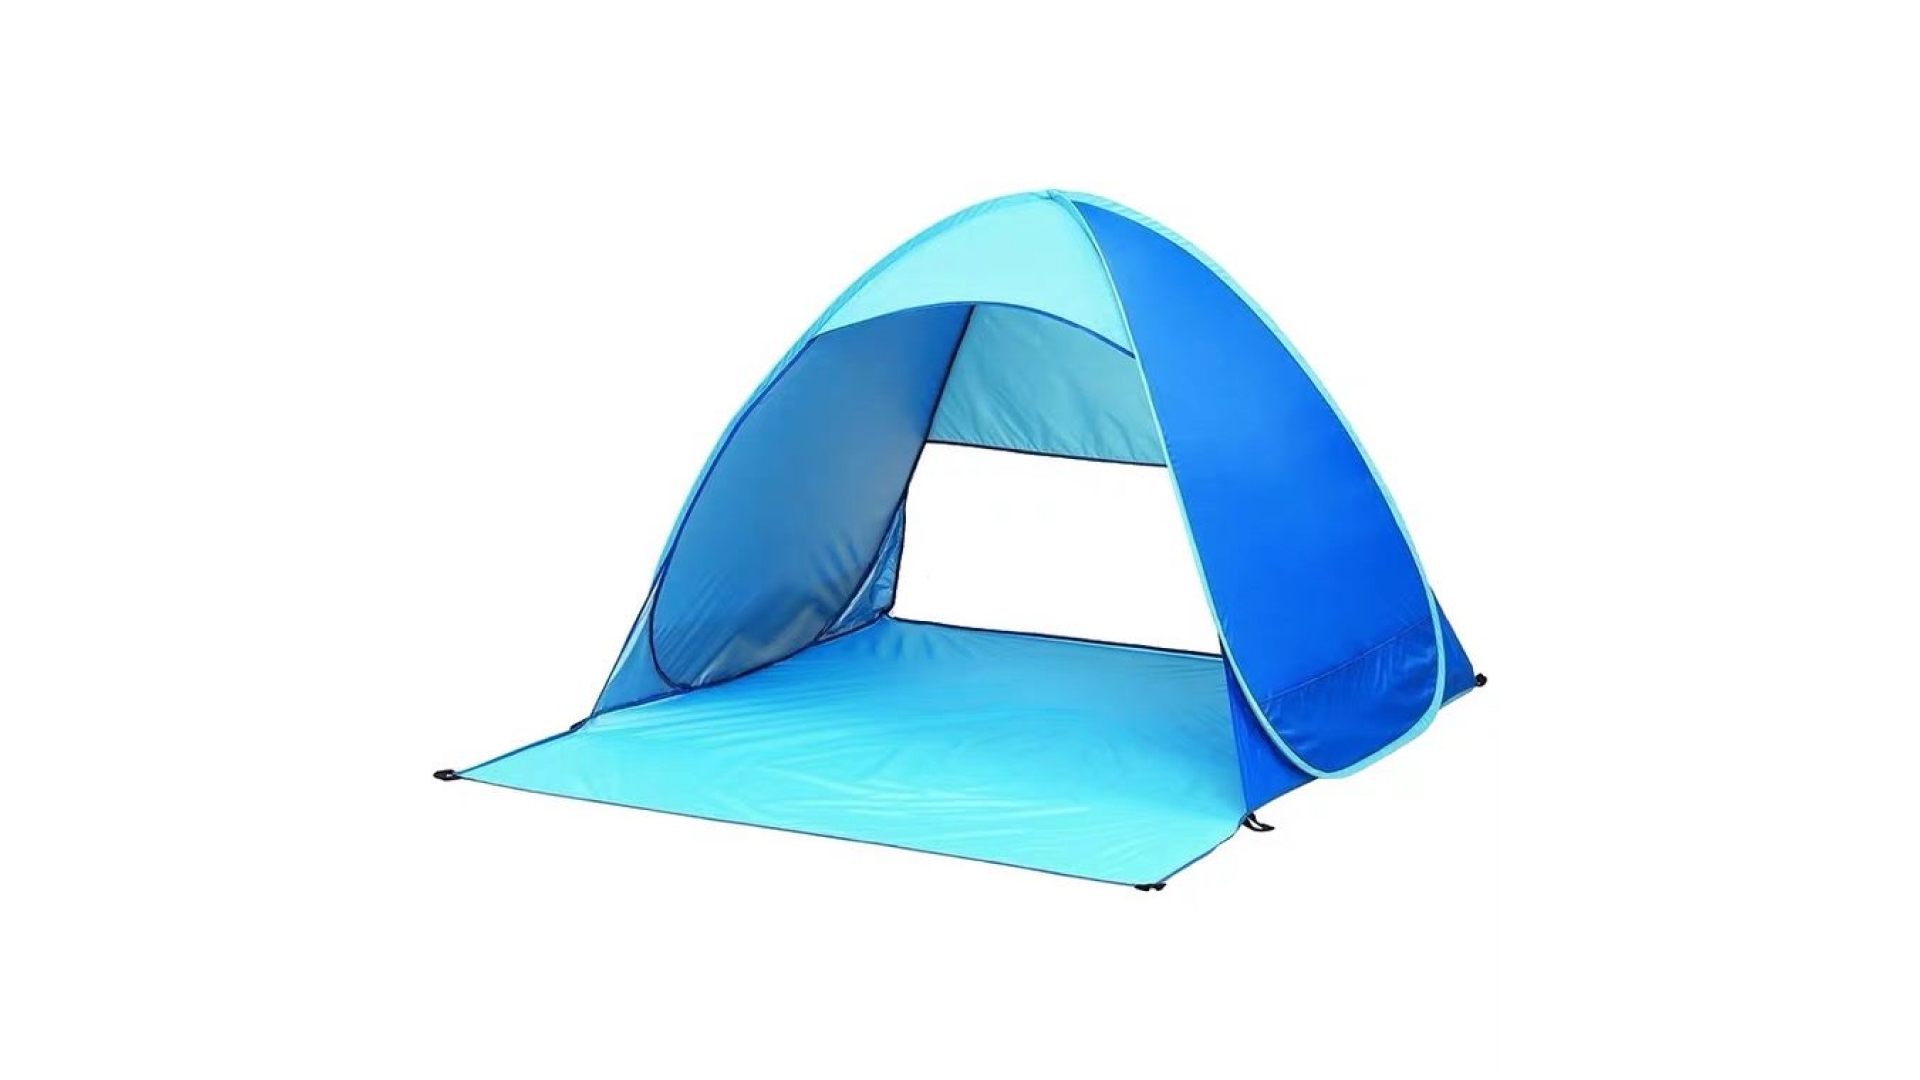 A light blue beach tent.